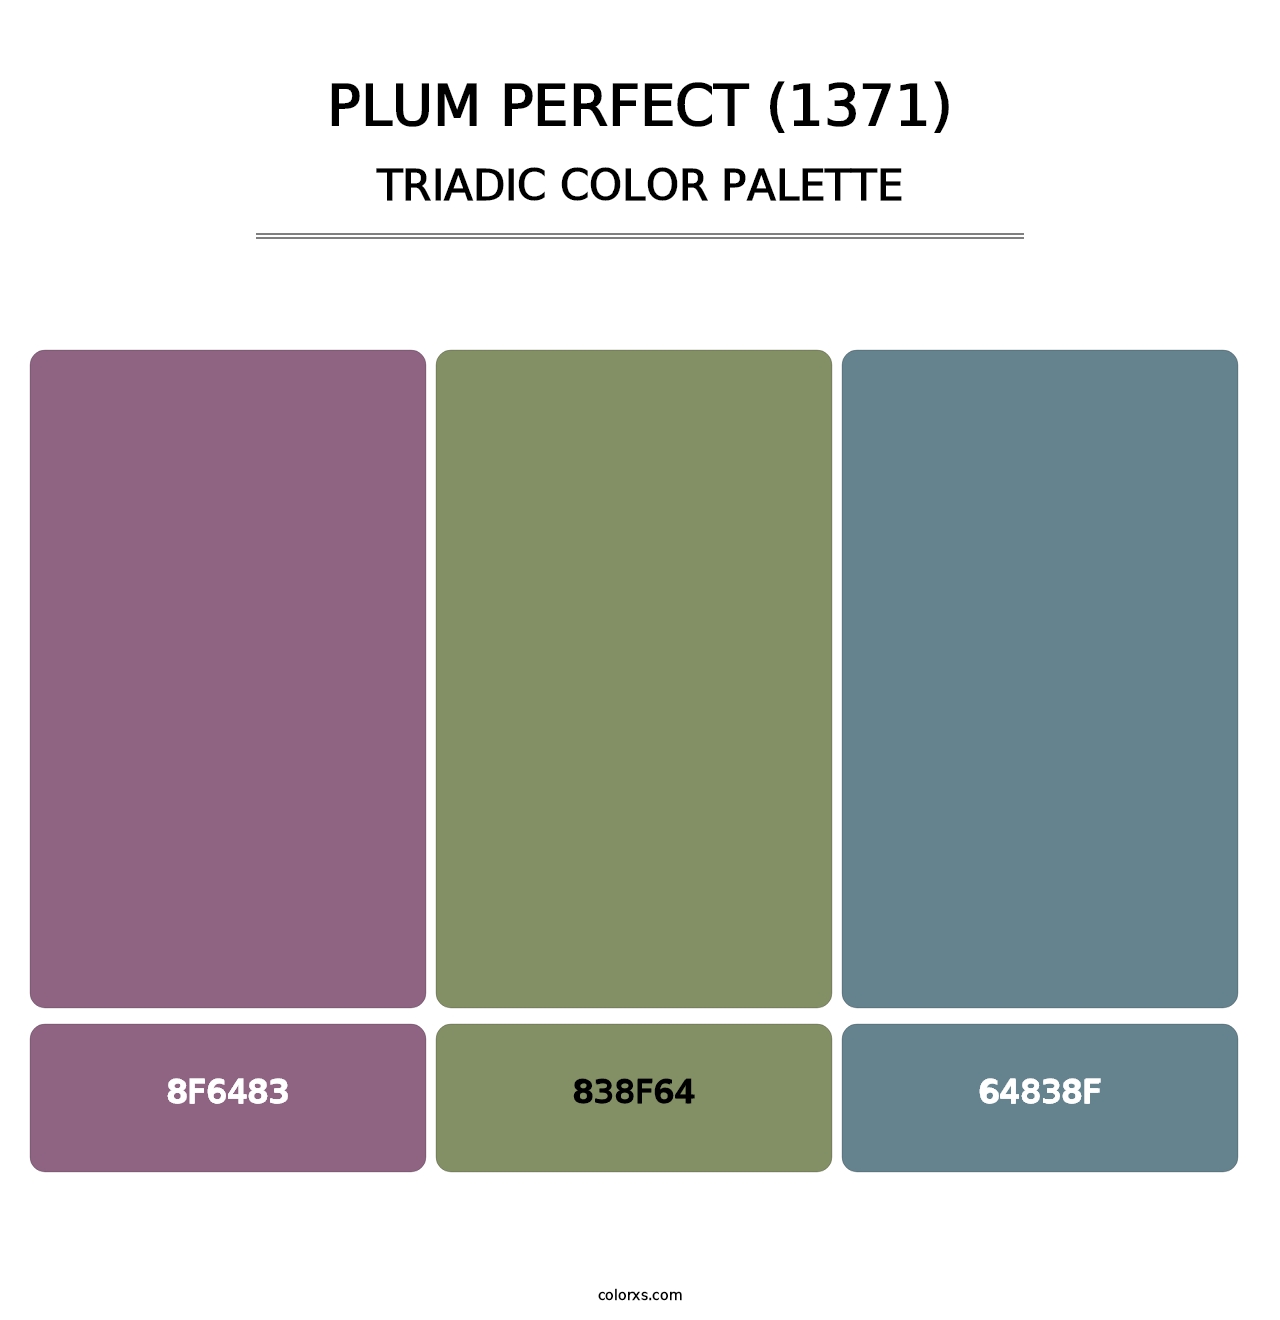 Plum Perfect (1371) - Triadic Color Palette